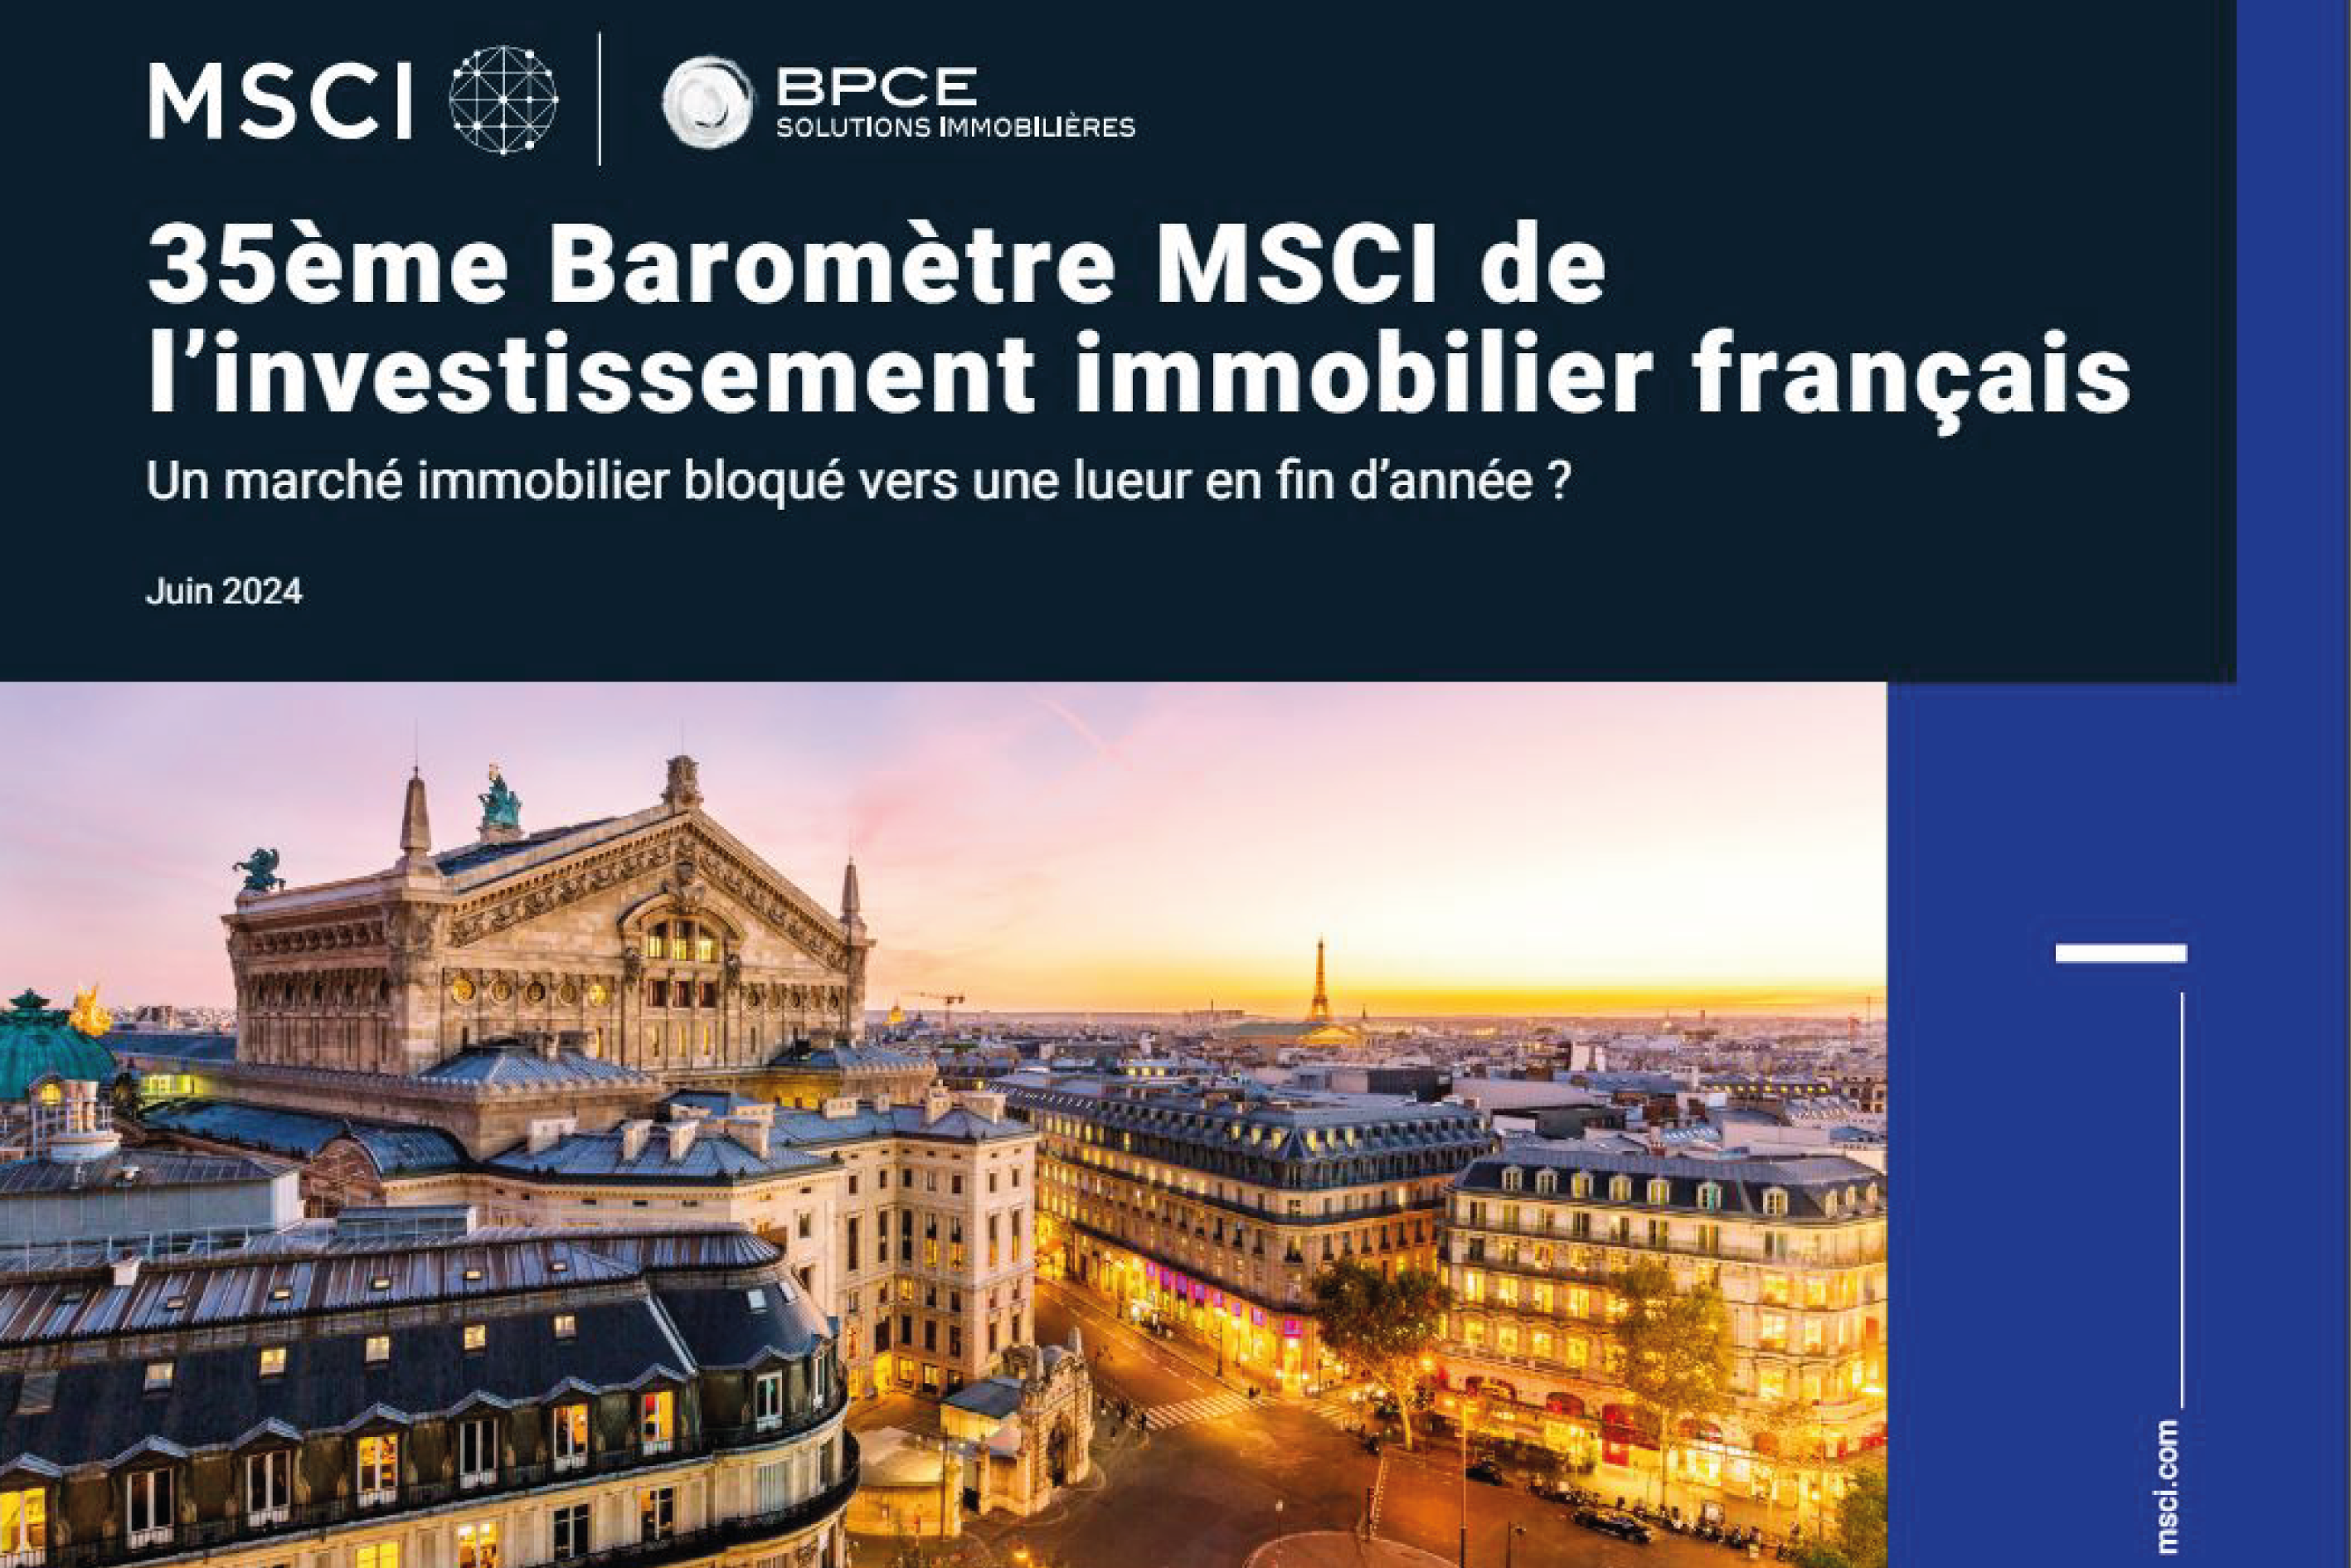 35ème édition du Baromètre MSCI – BPCE Solutions immobilières sur l’investissement immobilier français